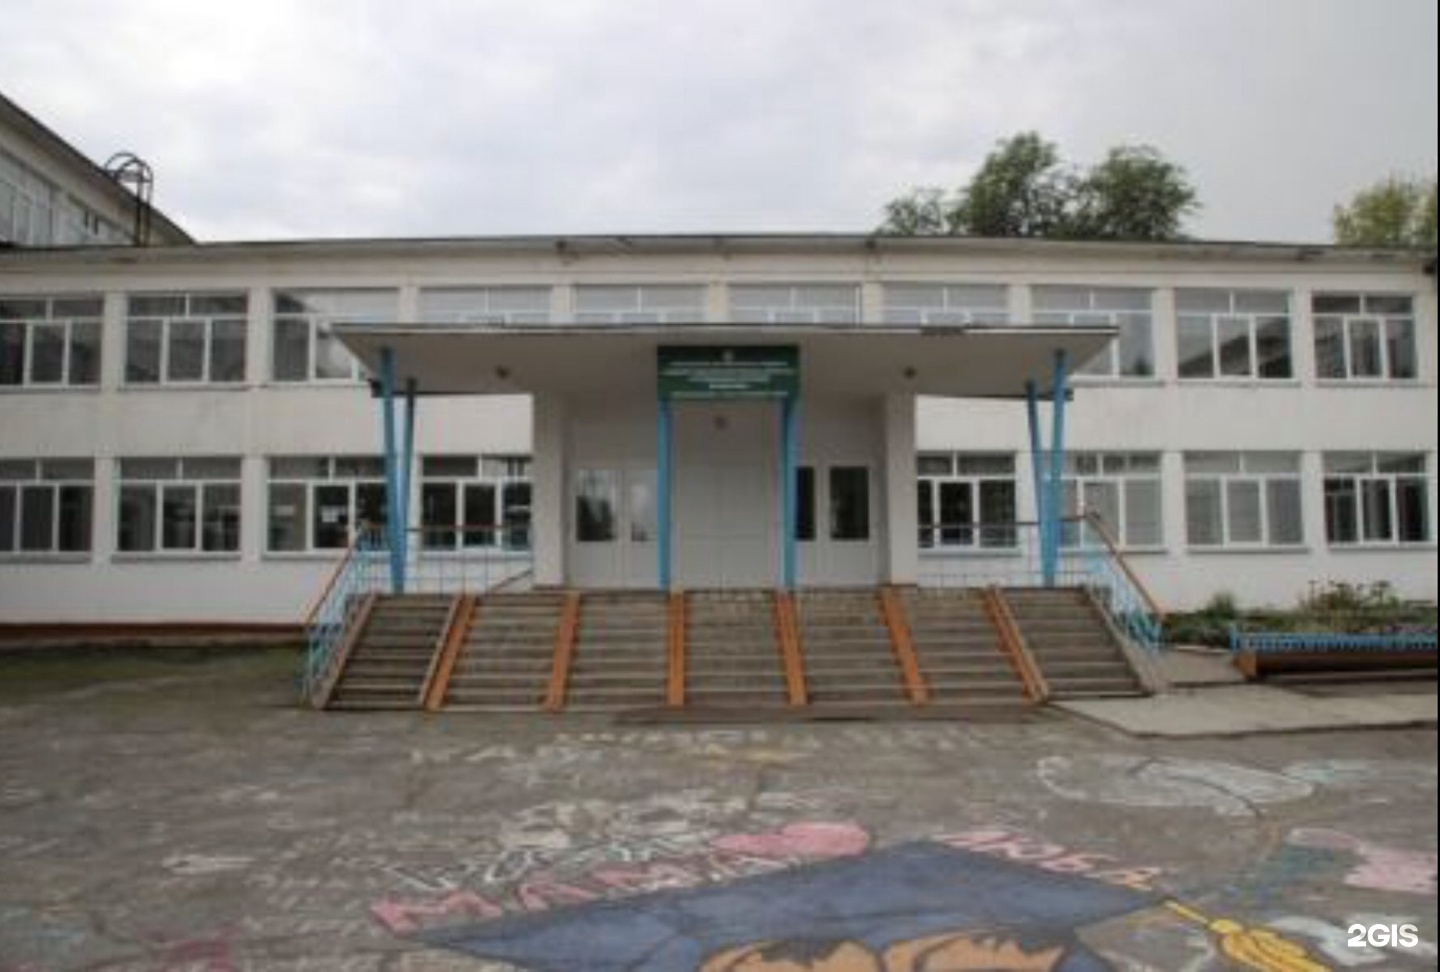 Школа 17 ачинск